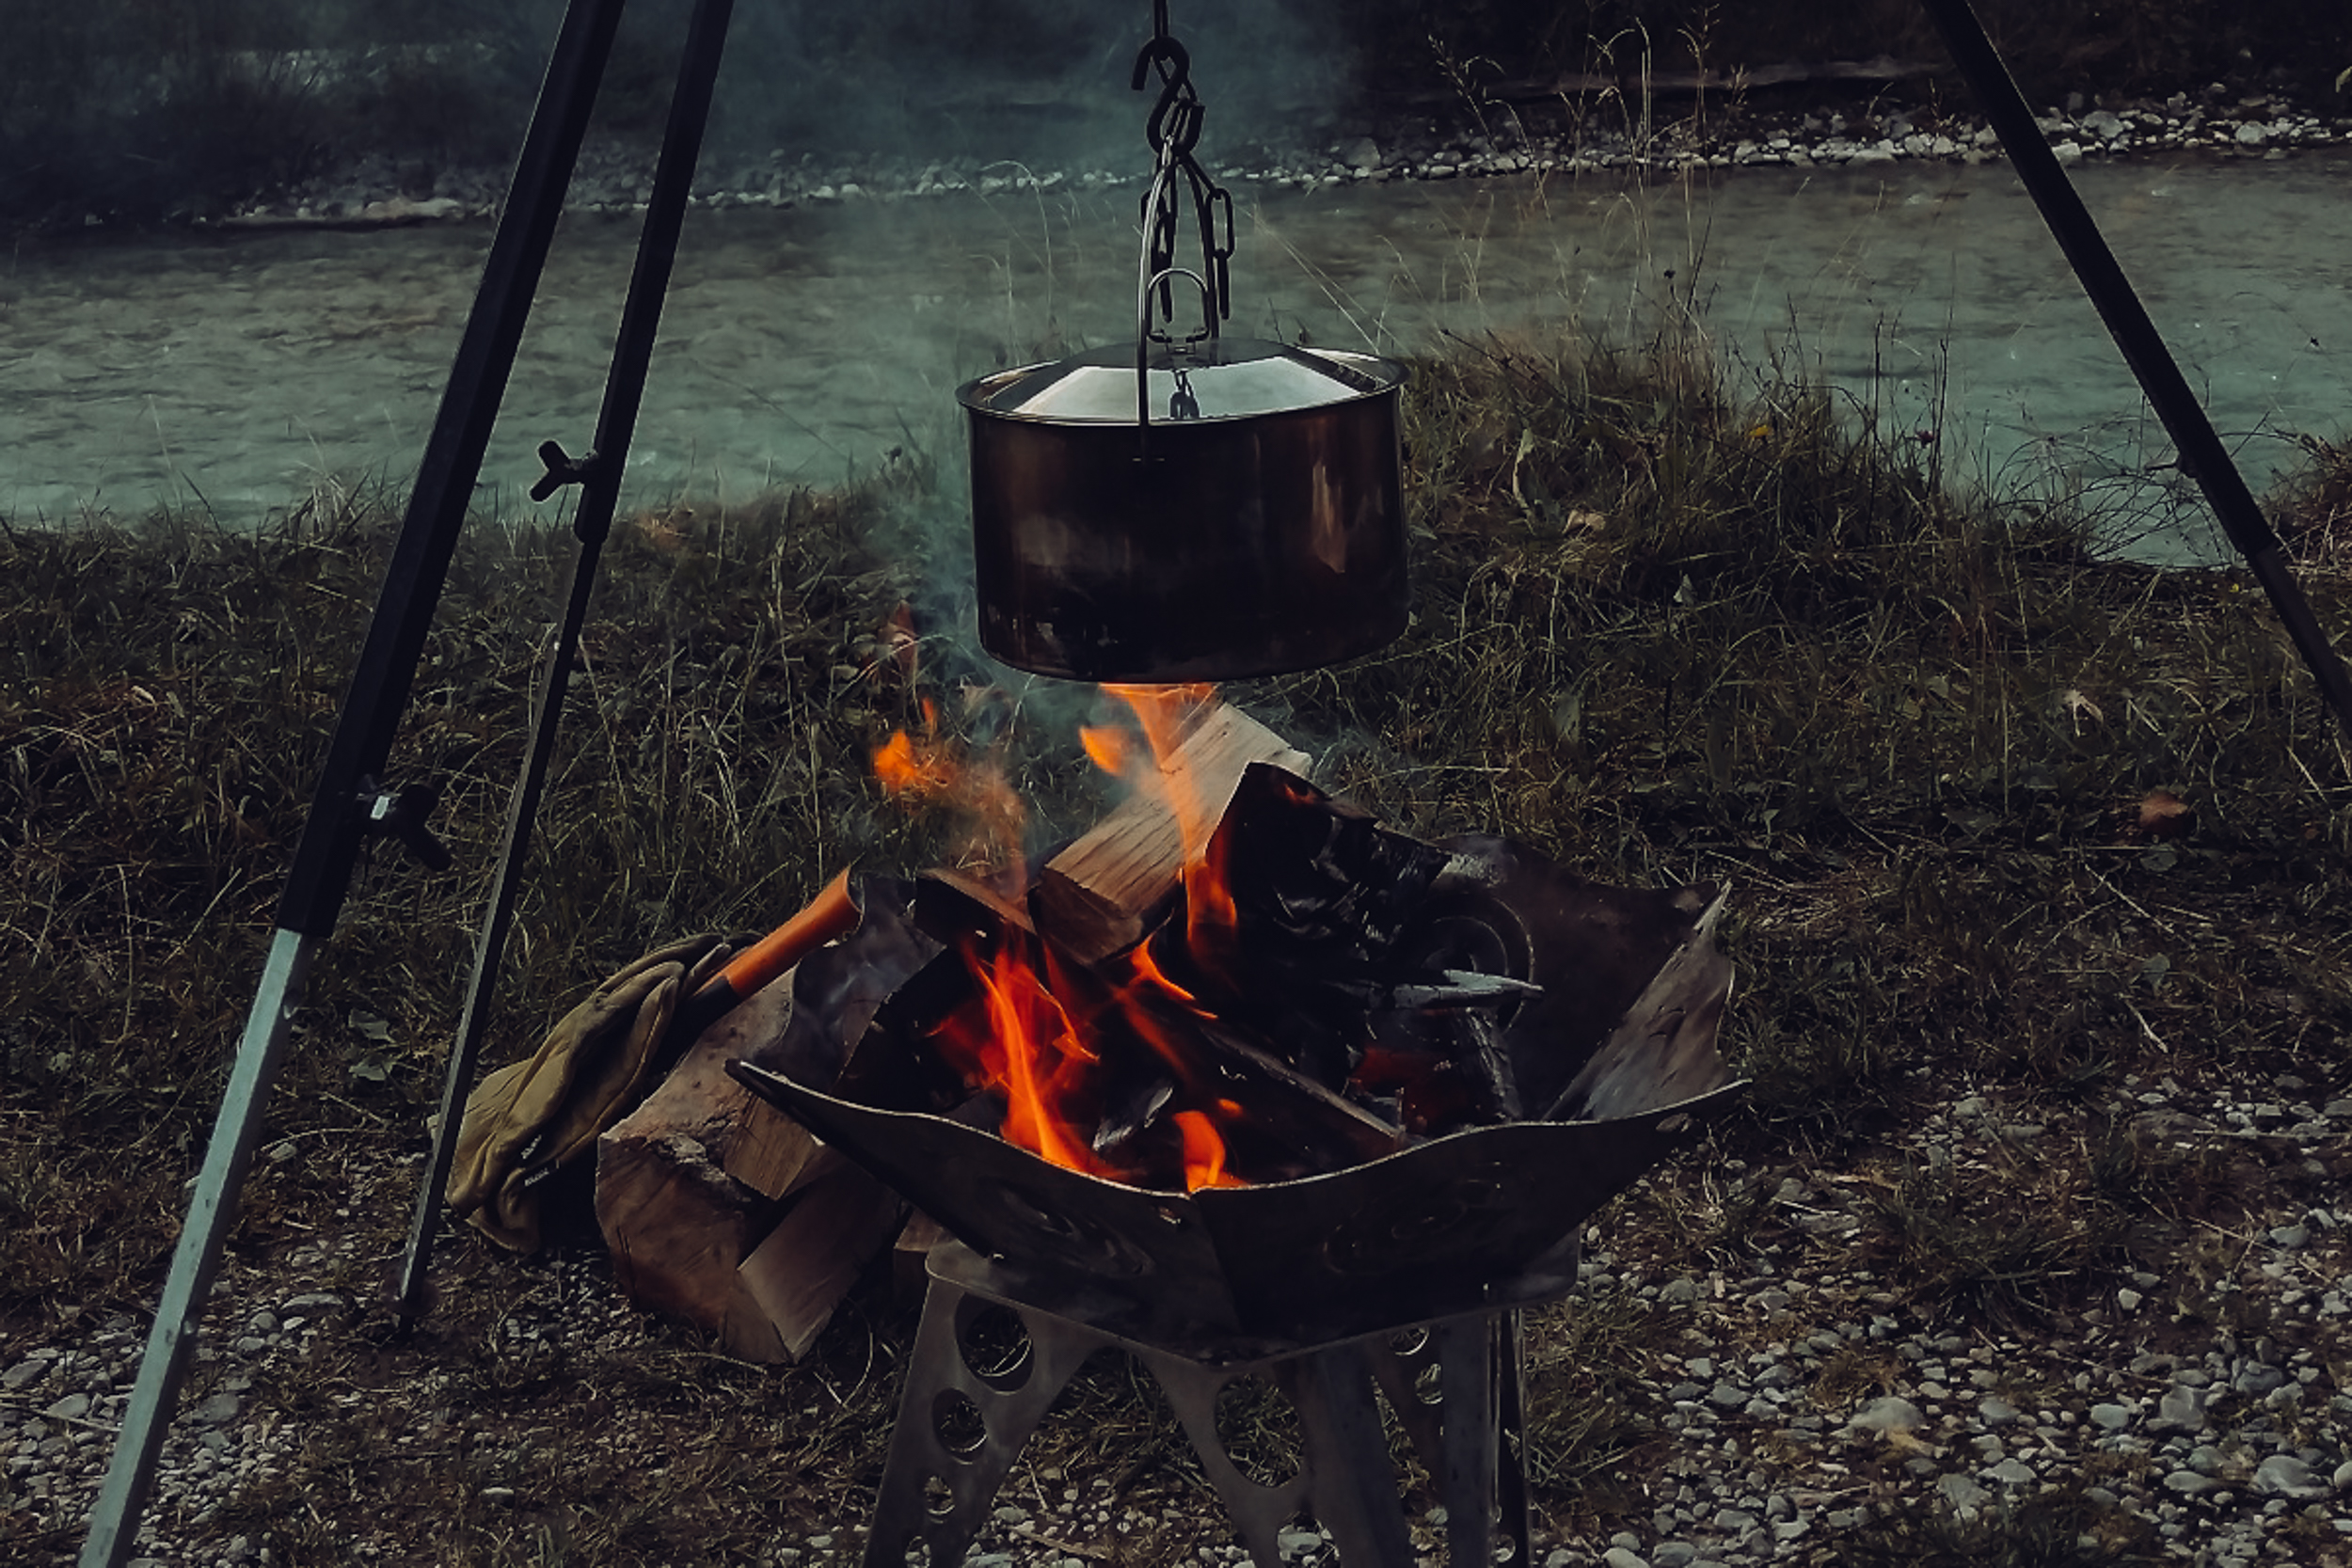 Das Feuer kann natürlich auch als gemütliche Kochstelle dienen.